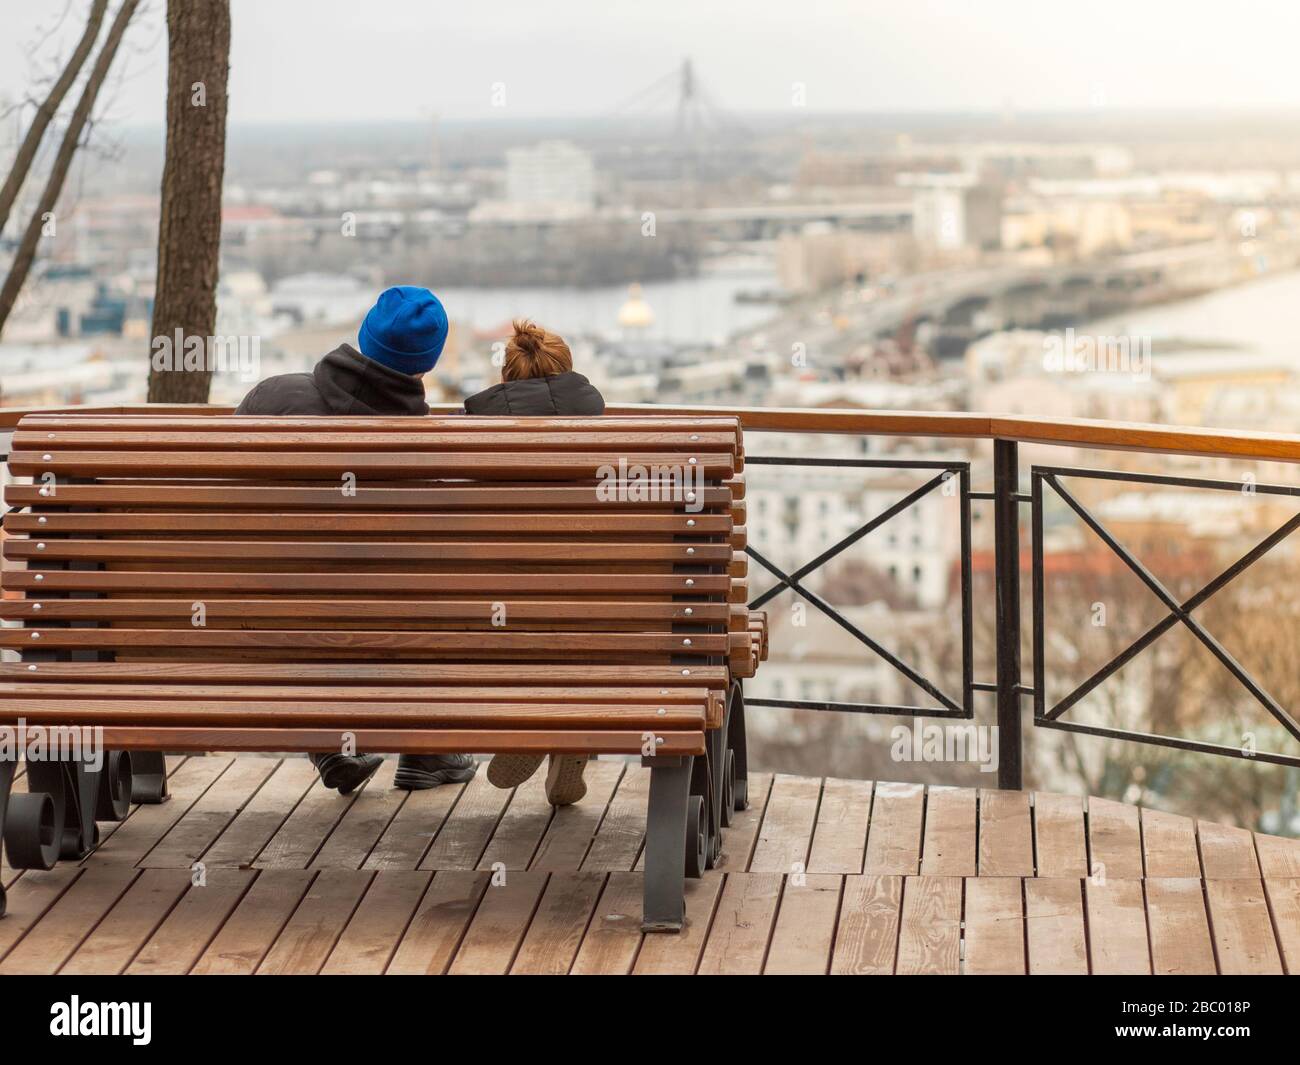 Deux amoureux, dans un cadre romantique, admirez la vue sur le paysage de la ville. Photo dans des tons orange chauds. Banque D'Images